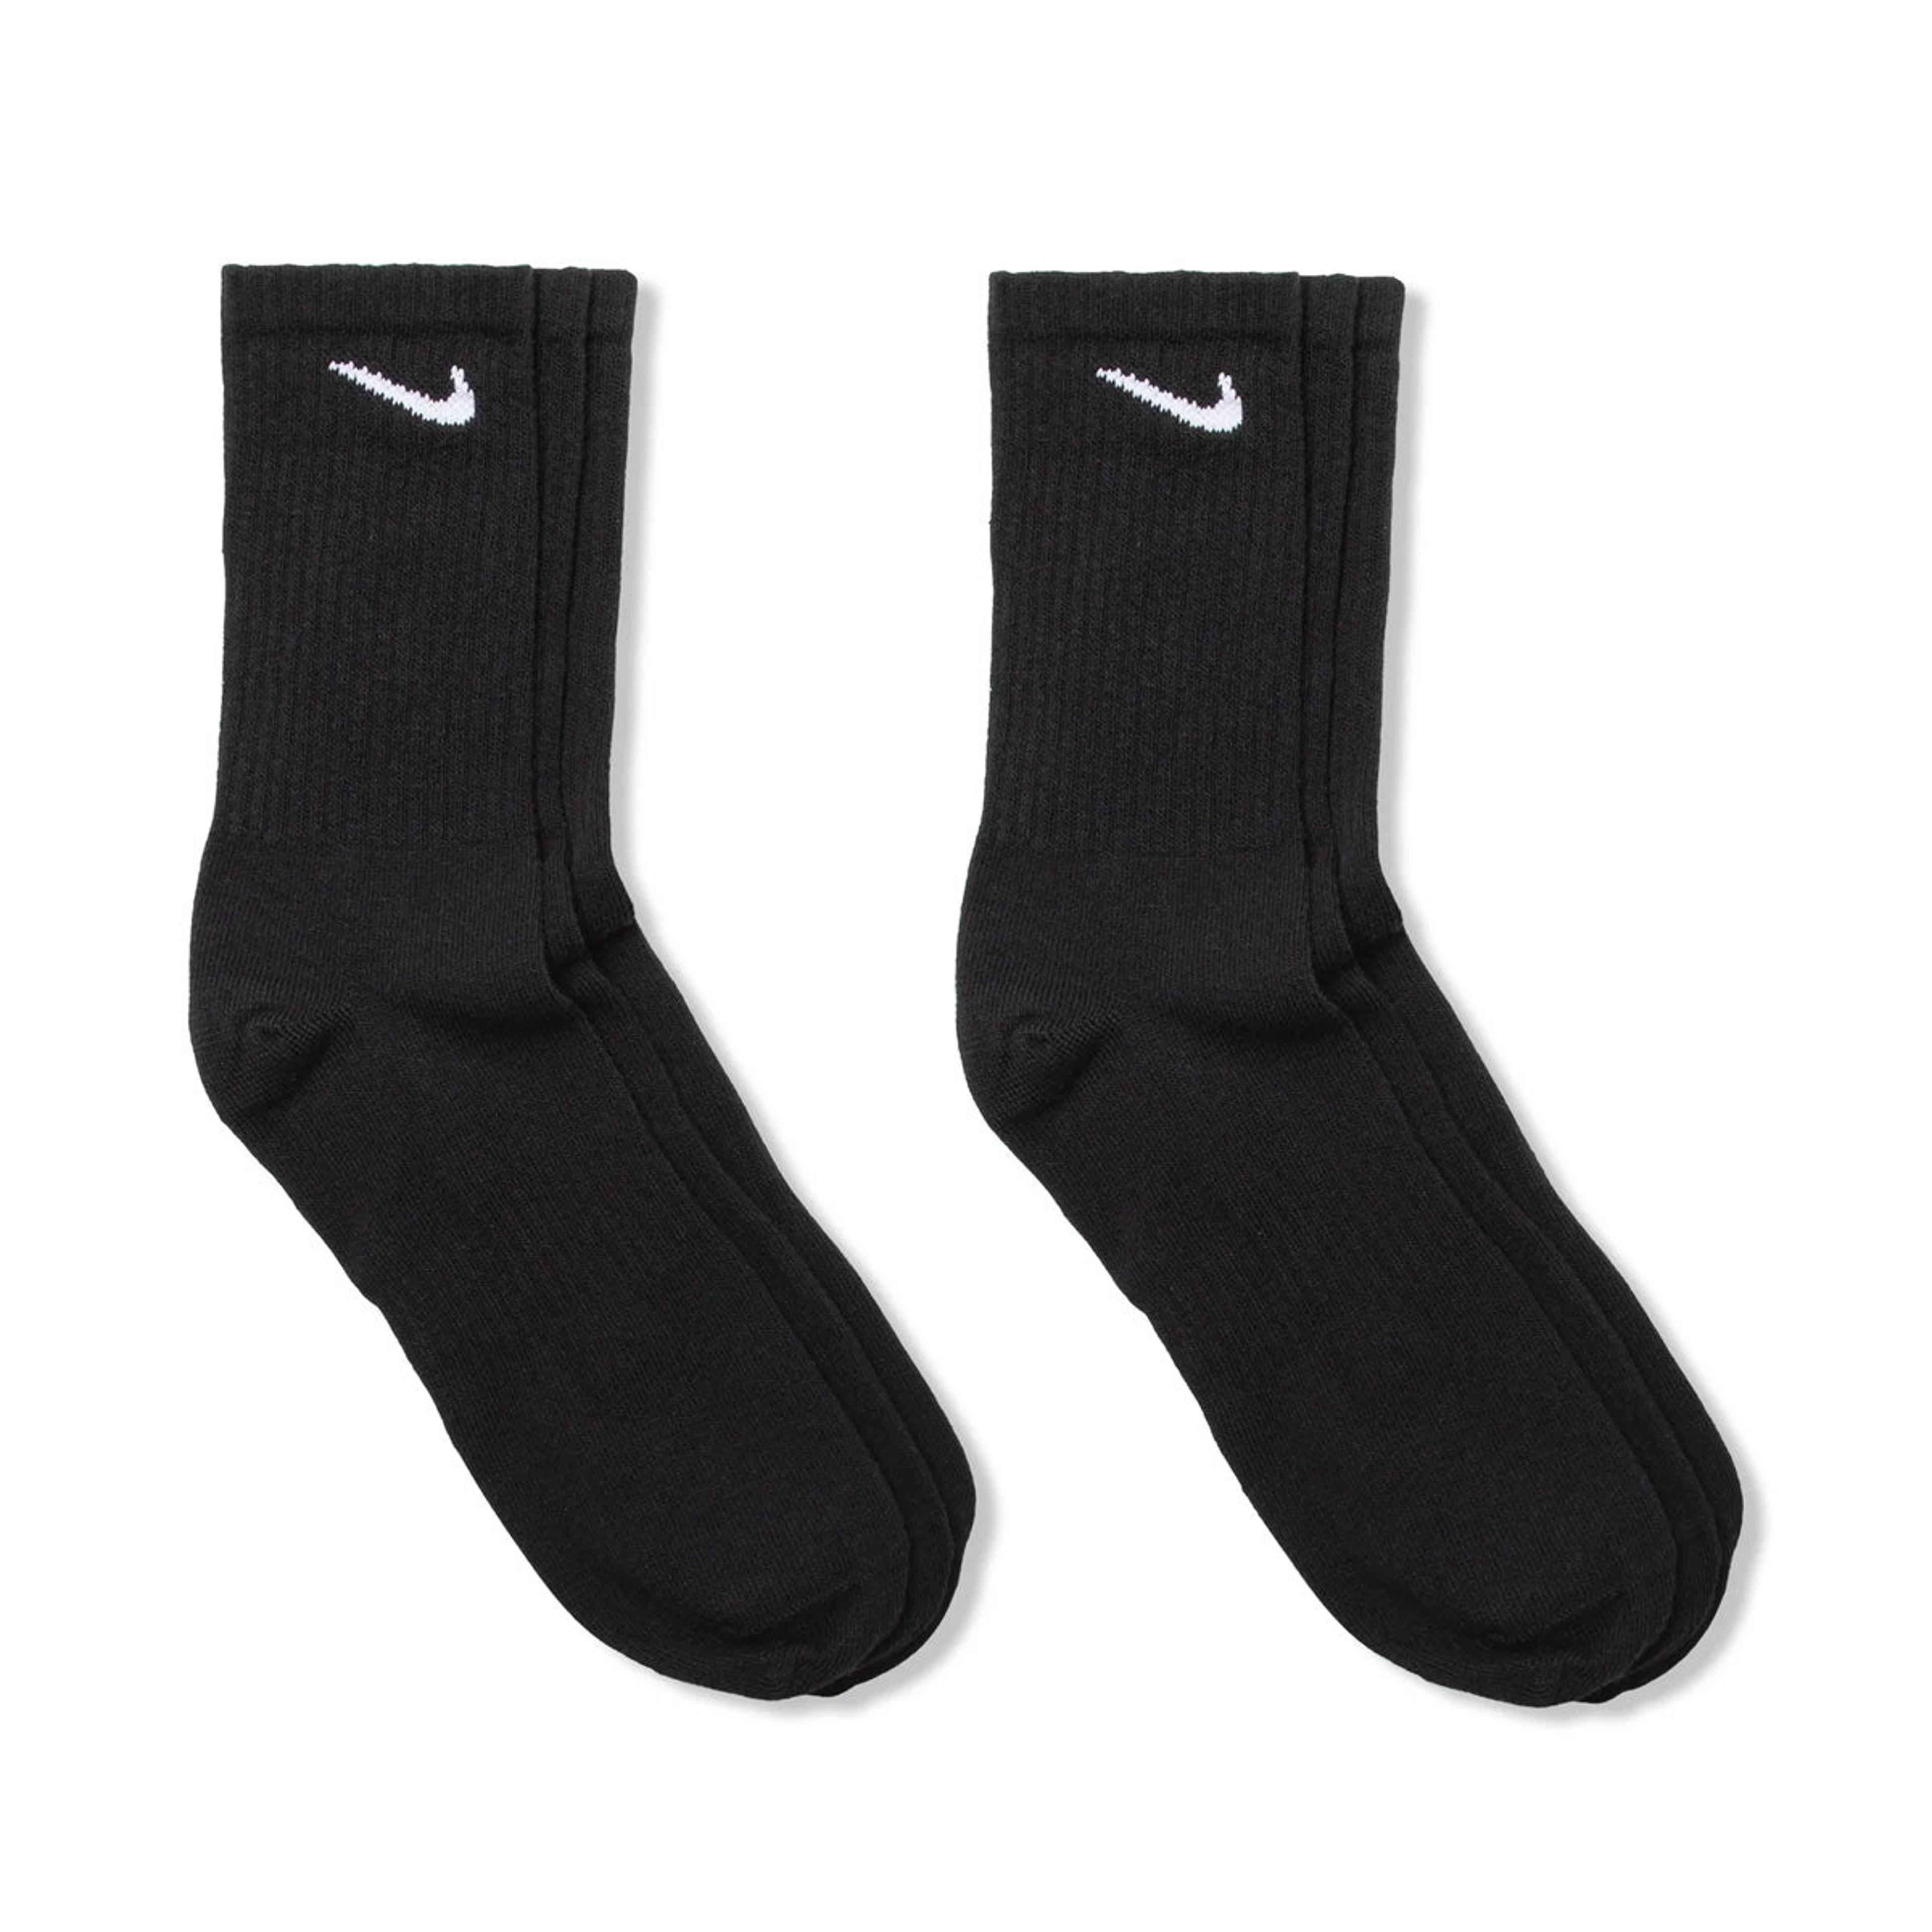 Alternate View 2 of Nike Everyday Training  Crew Socks (3pairs)